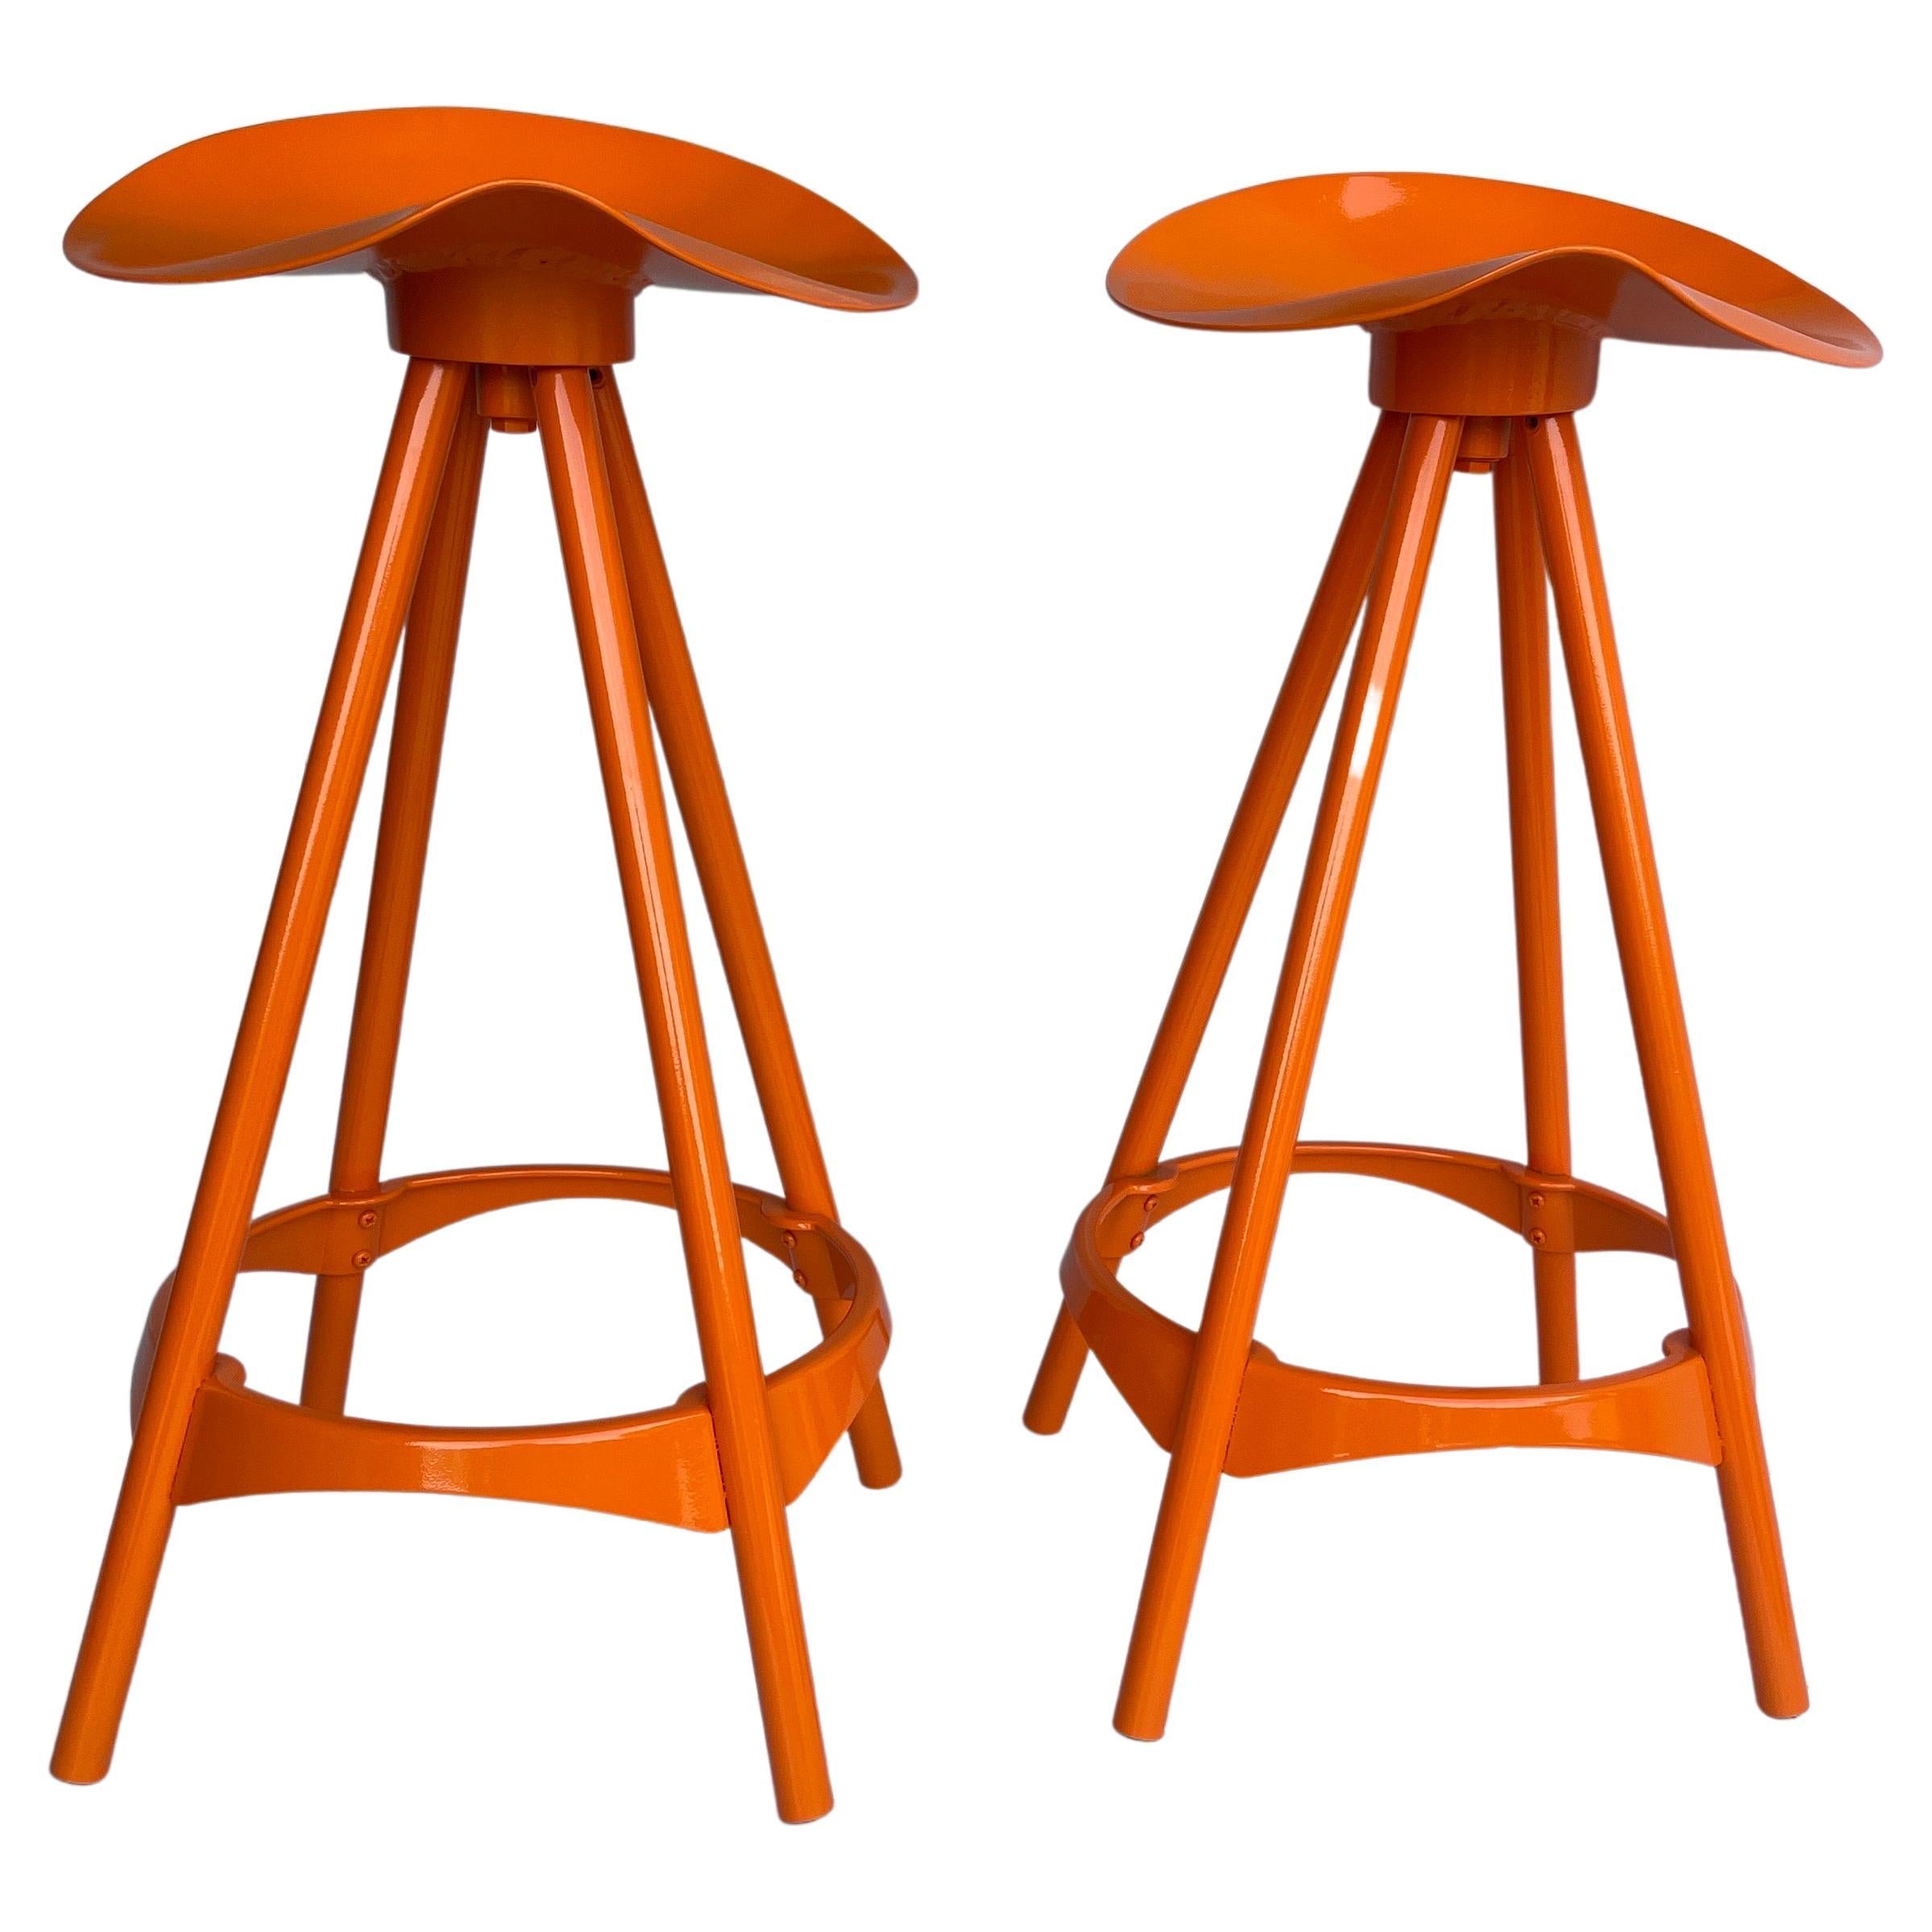 Tabourets de bar pivotants de style industriel, orange peint par poudrage, la paire

Tabourets nouvellement peints qui seraient fonctionnels dans de nombreux environnements domestiques avec l'ambiance du milieu du siècle. Cette paire orange Hermes